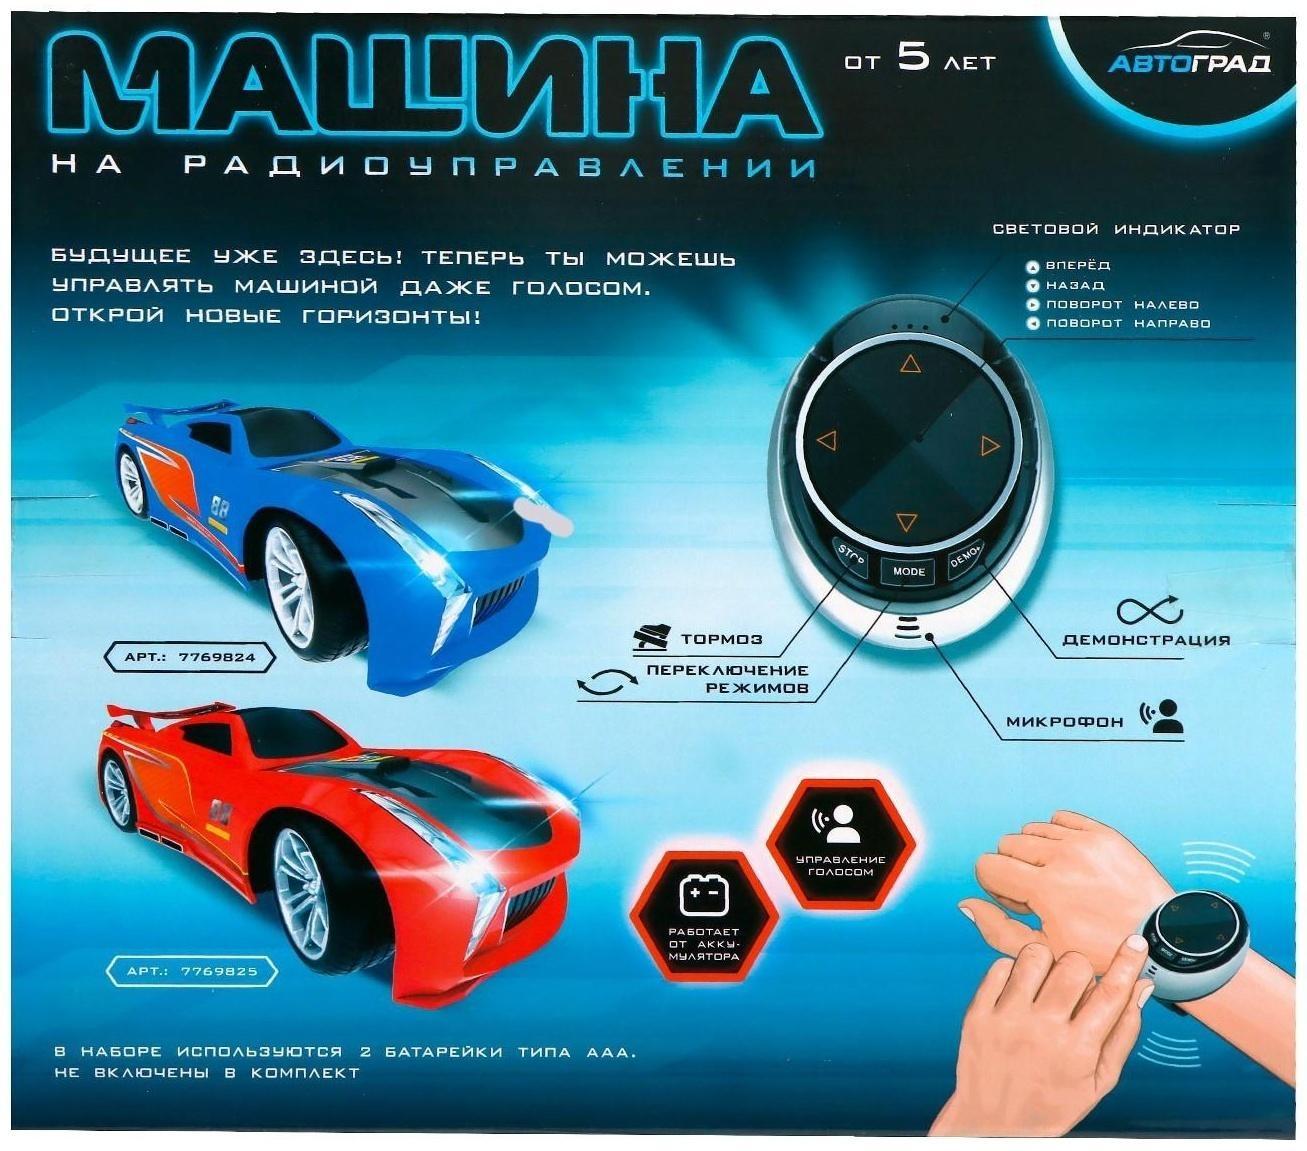 Машина радиоуправляемая VOICE, голосовое управление, русский язык, цвет синий